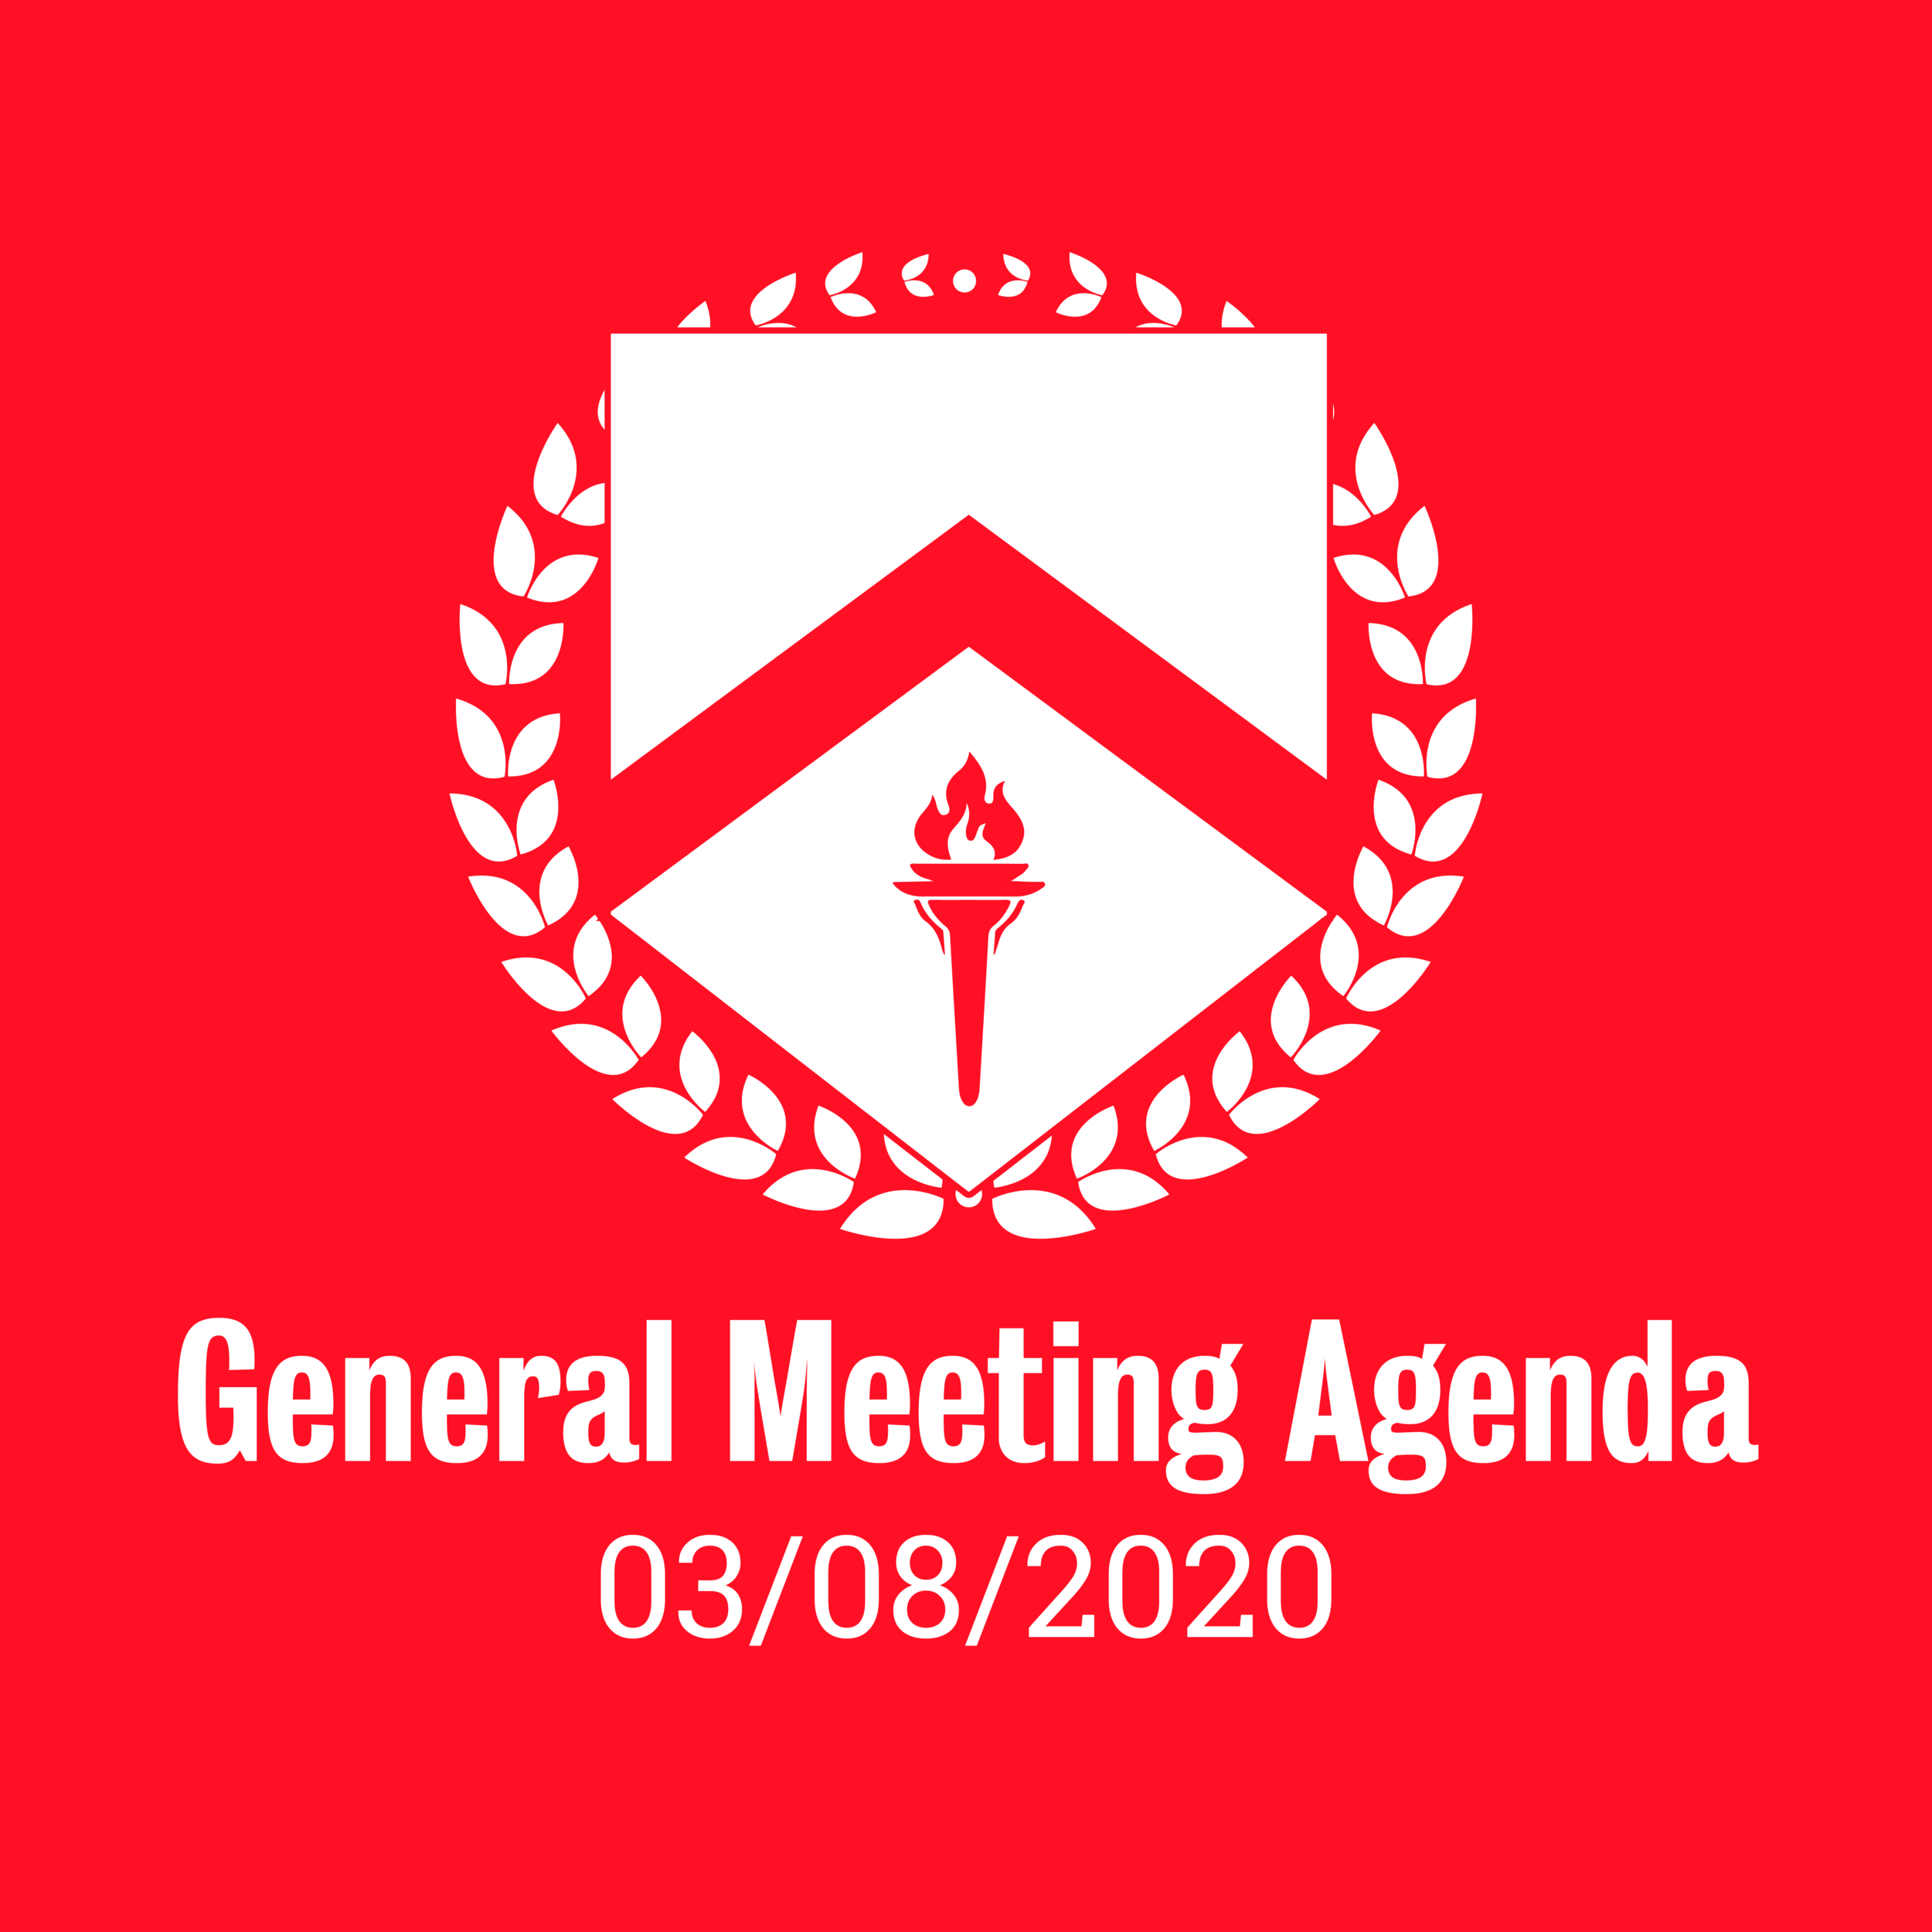 General Meeting Agenda 03/08/2020